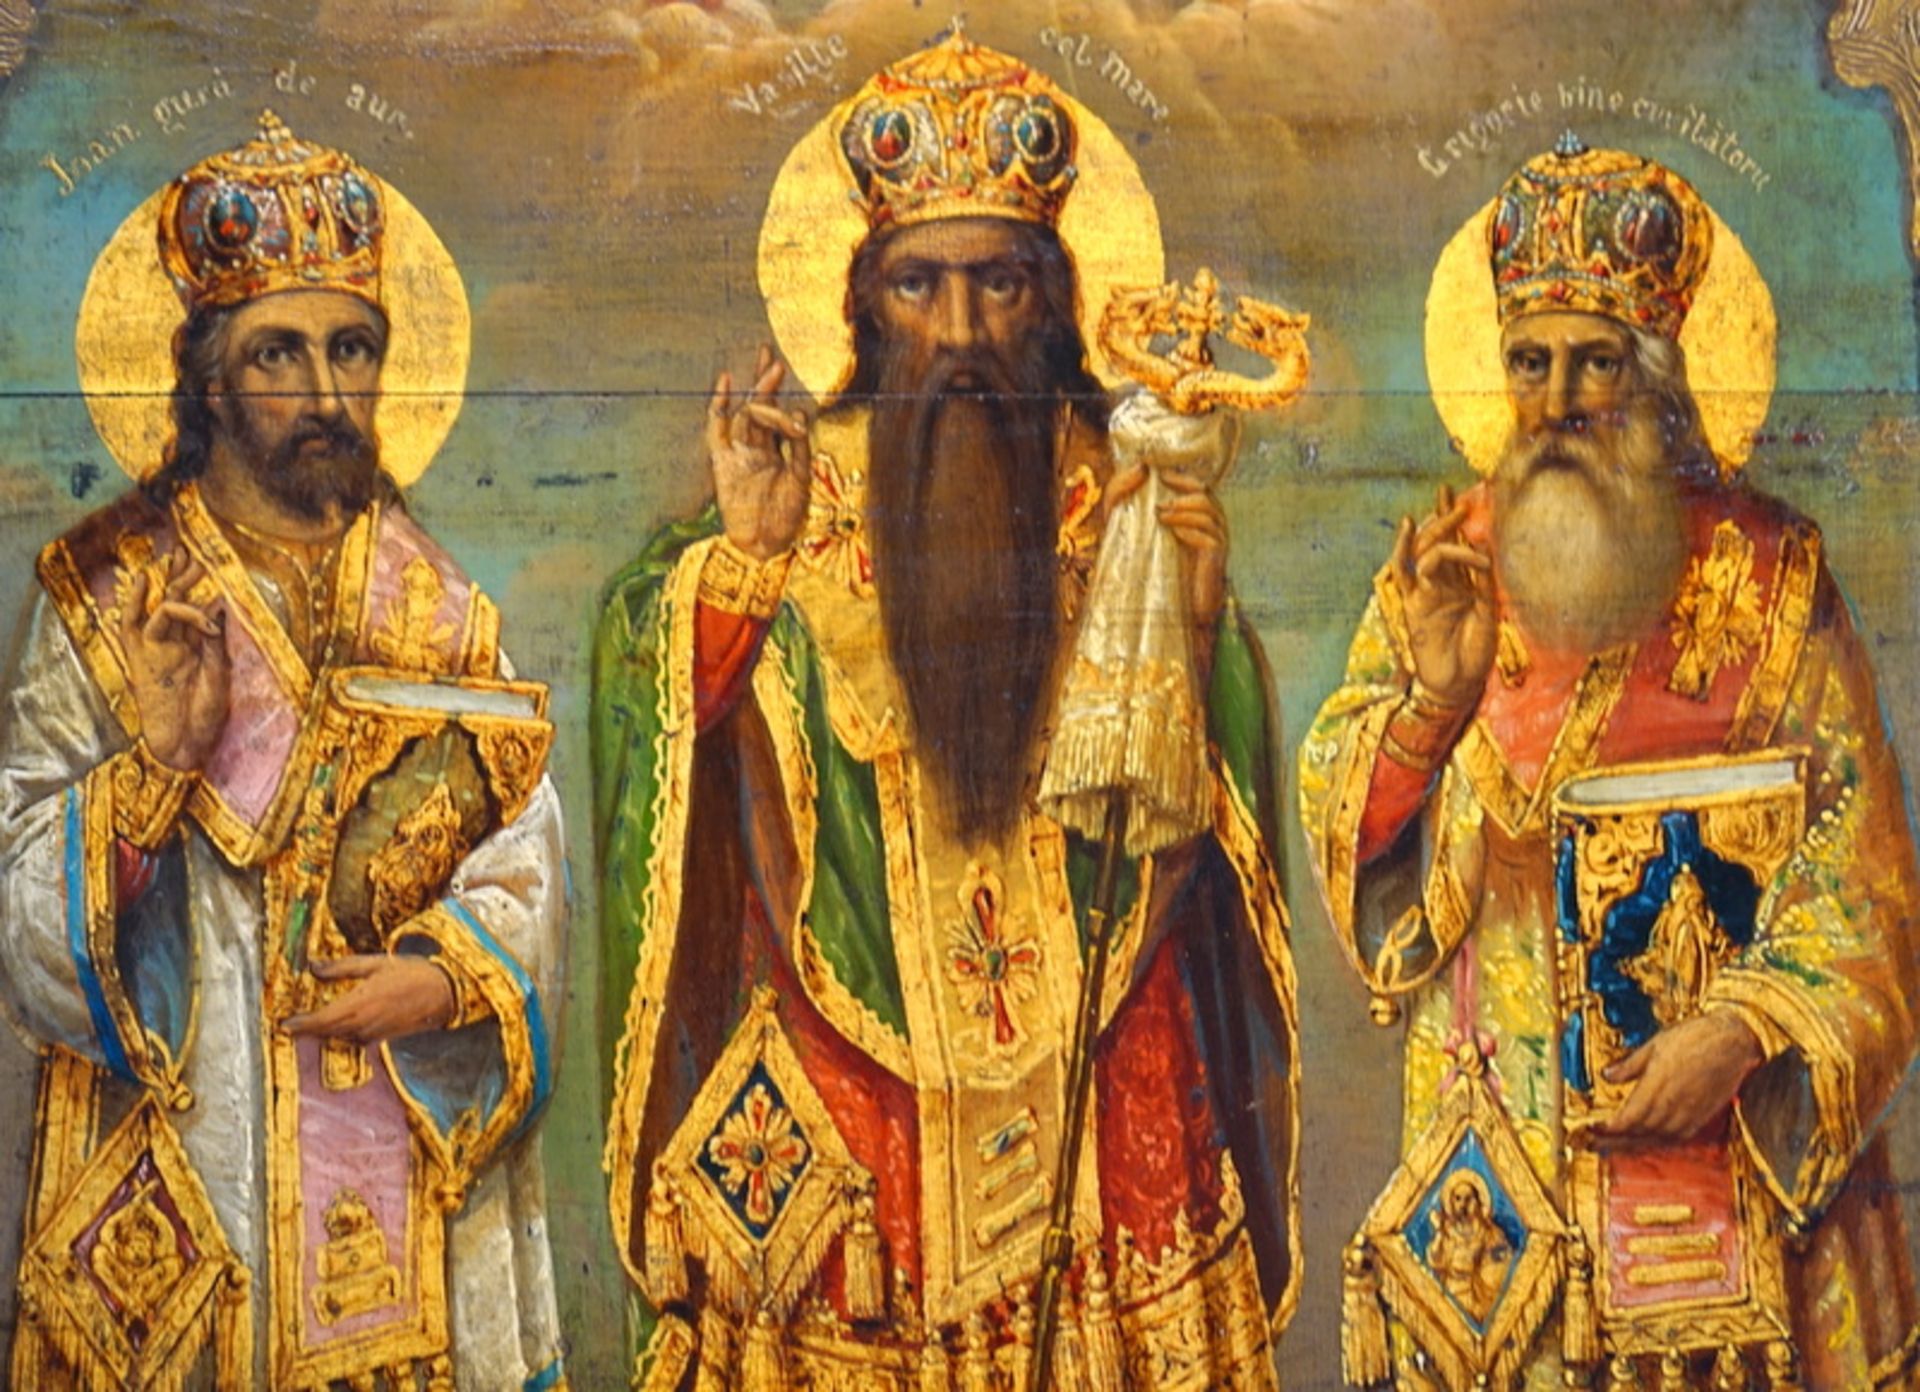 Slavische Ikone "Die Drei Hierarchen" 1907, signiert Matache - Bild 3 aus 3